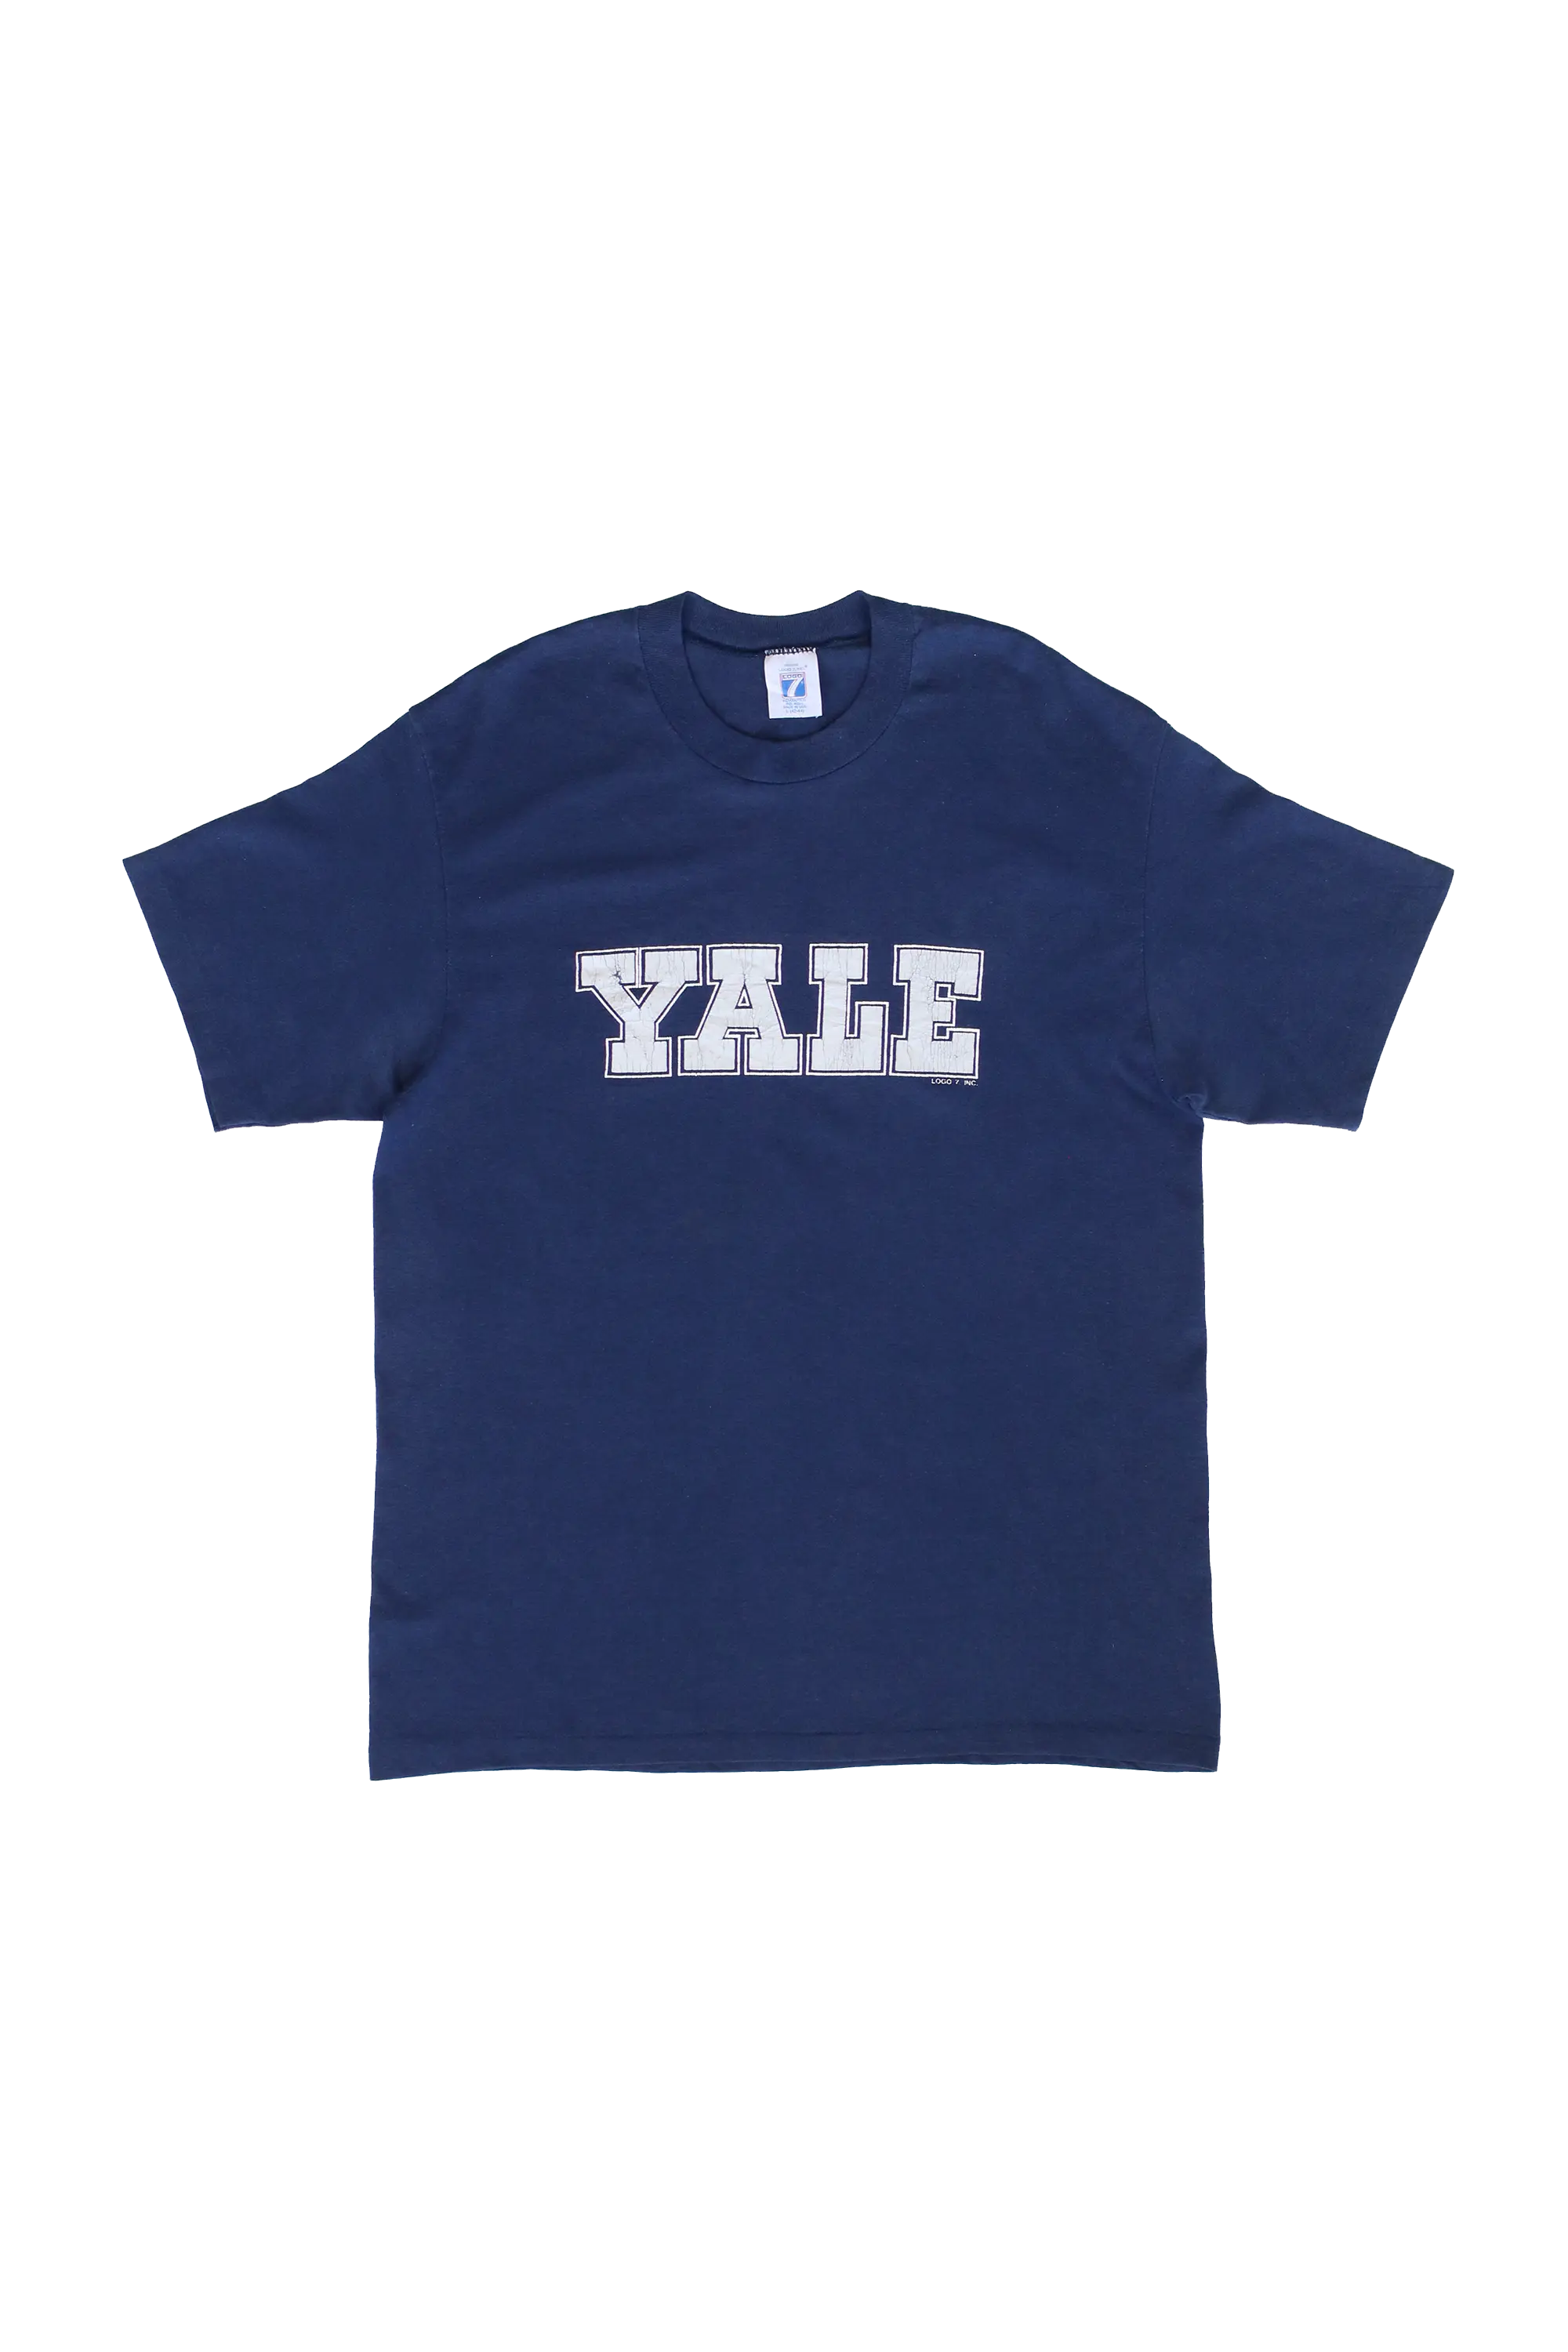 Vintage Yale University T-Shirt